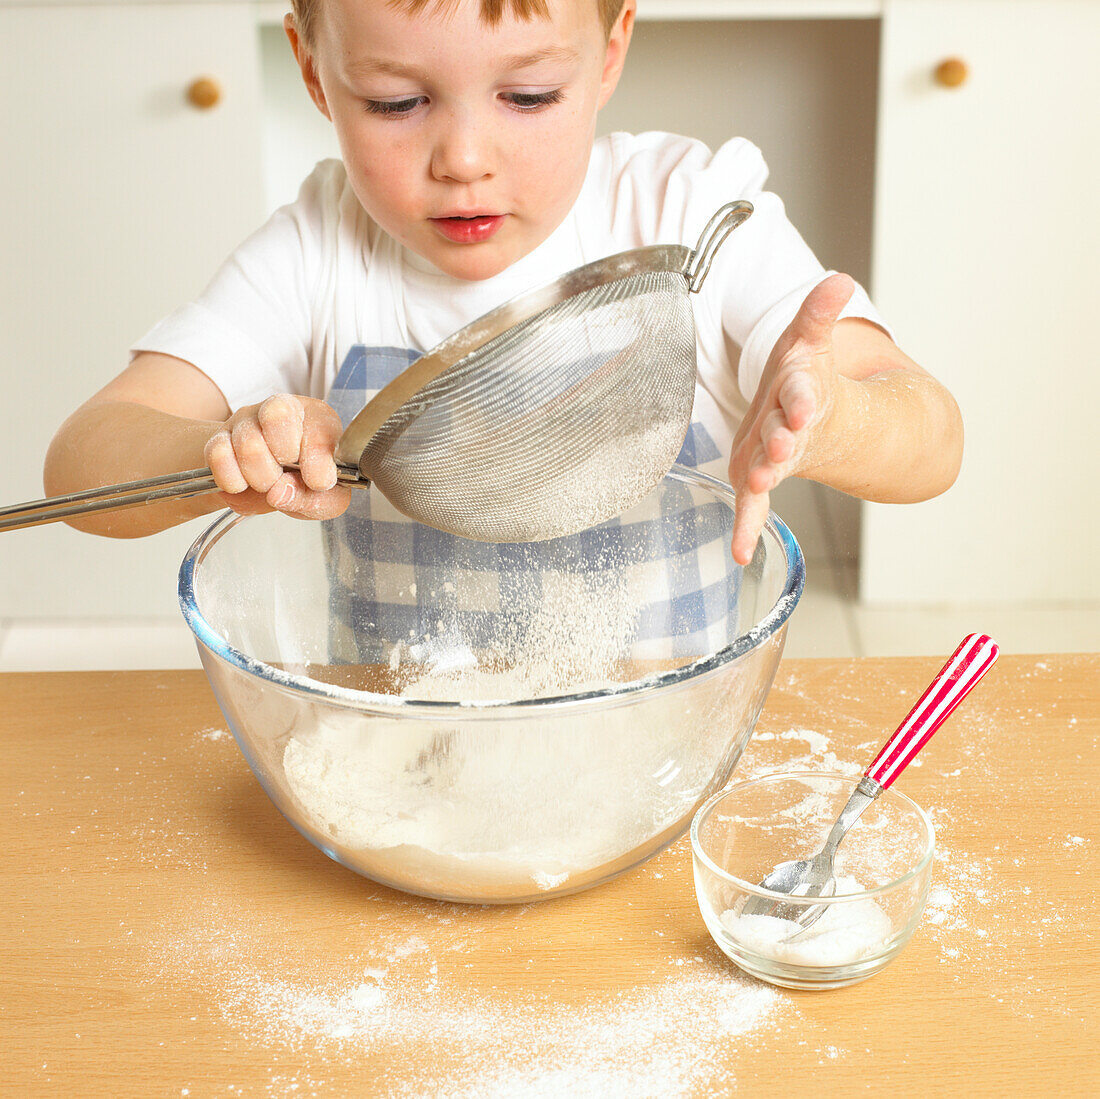 Boy holding sieve with flour